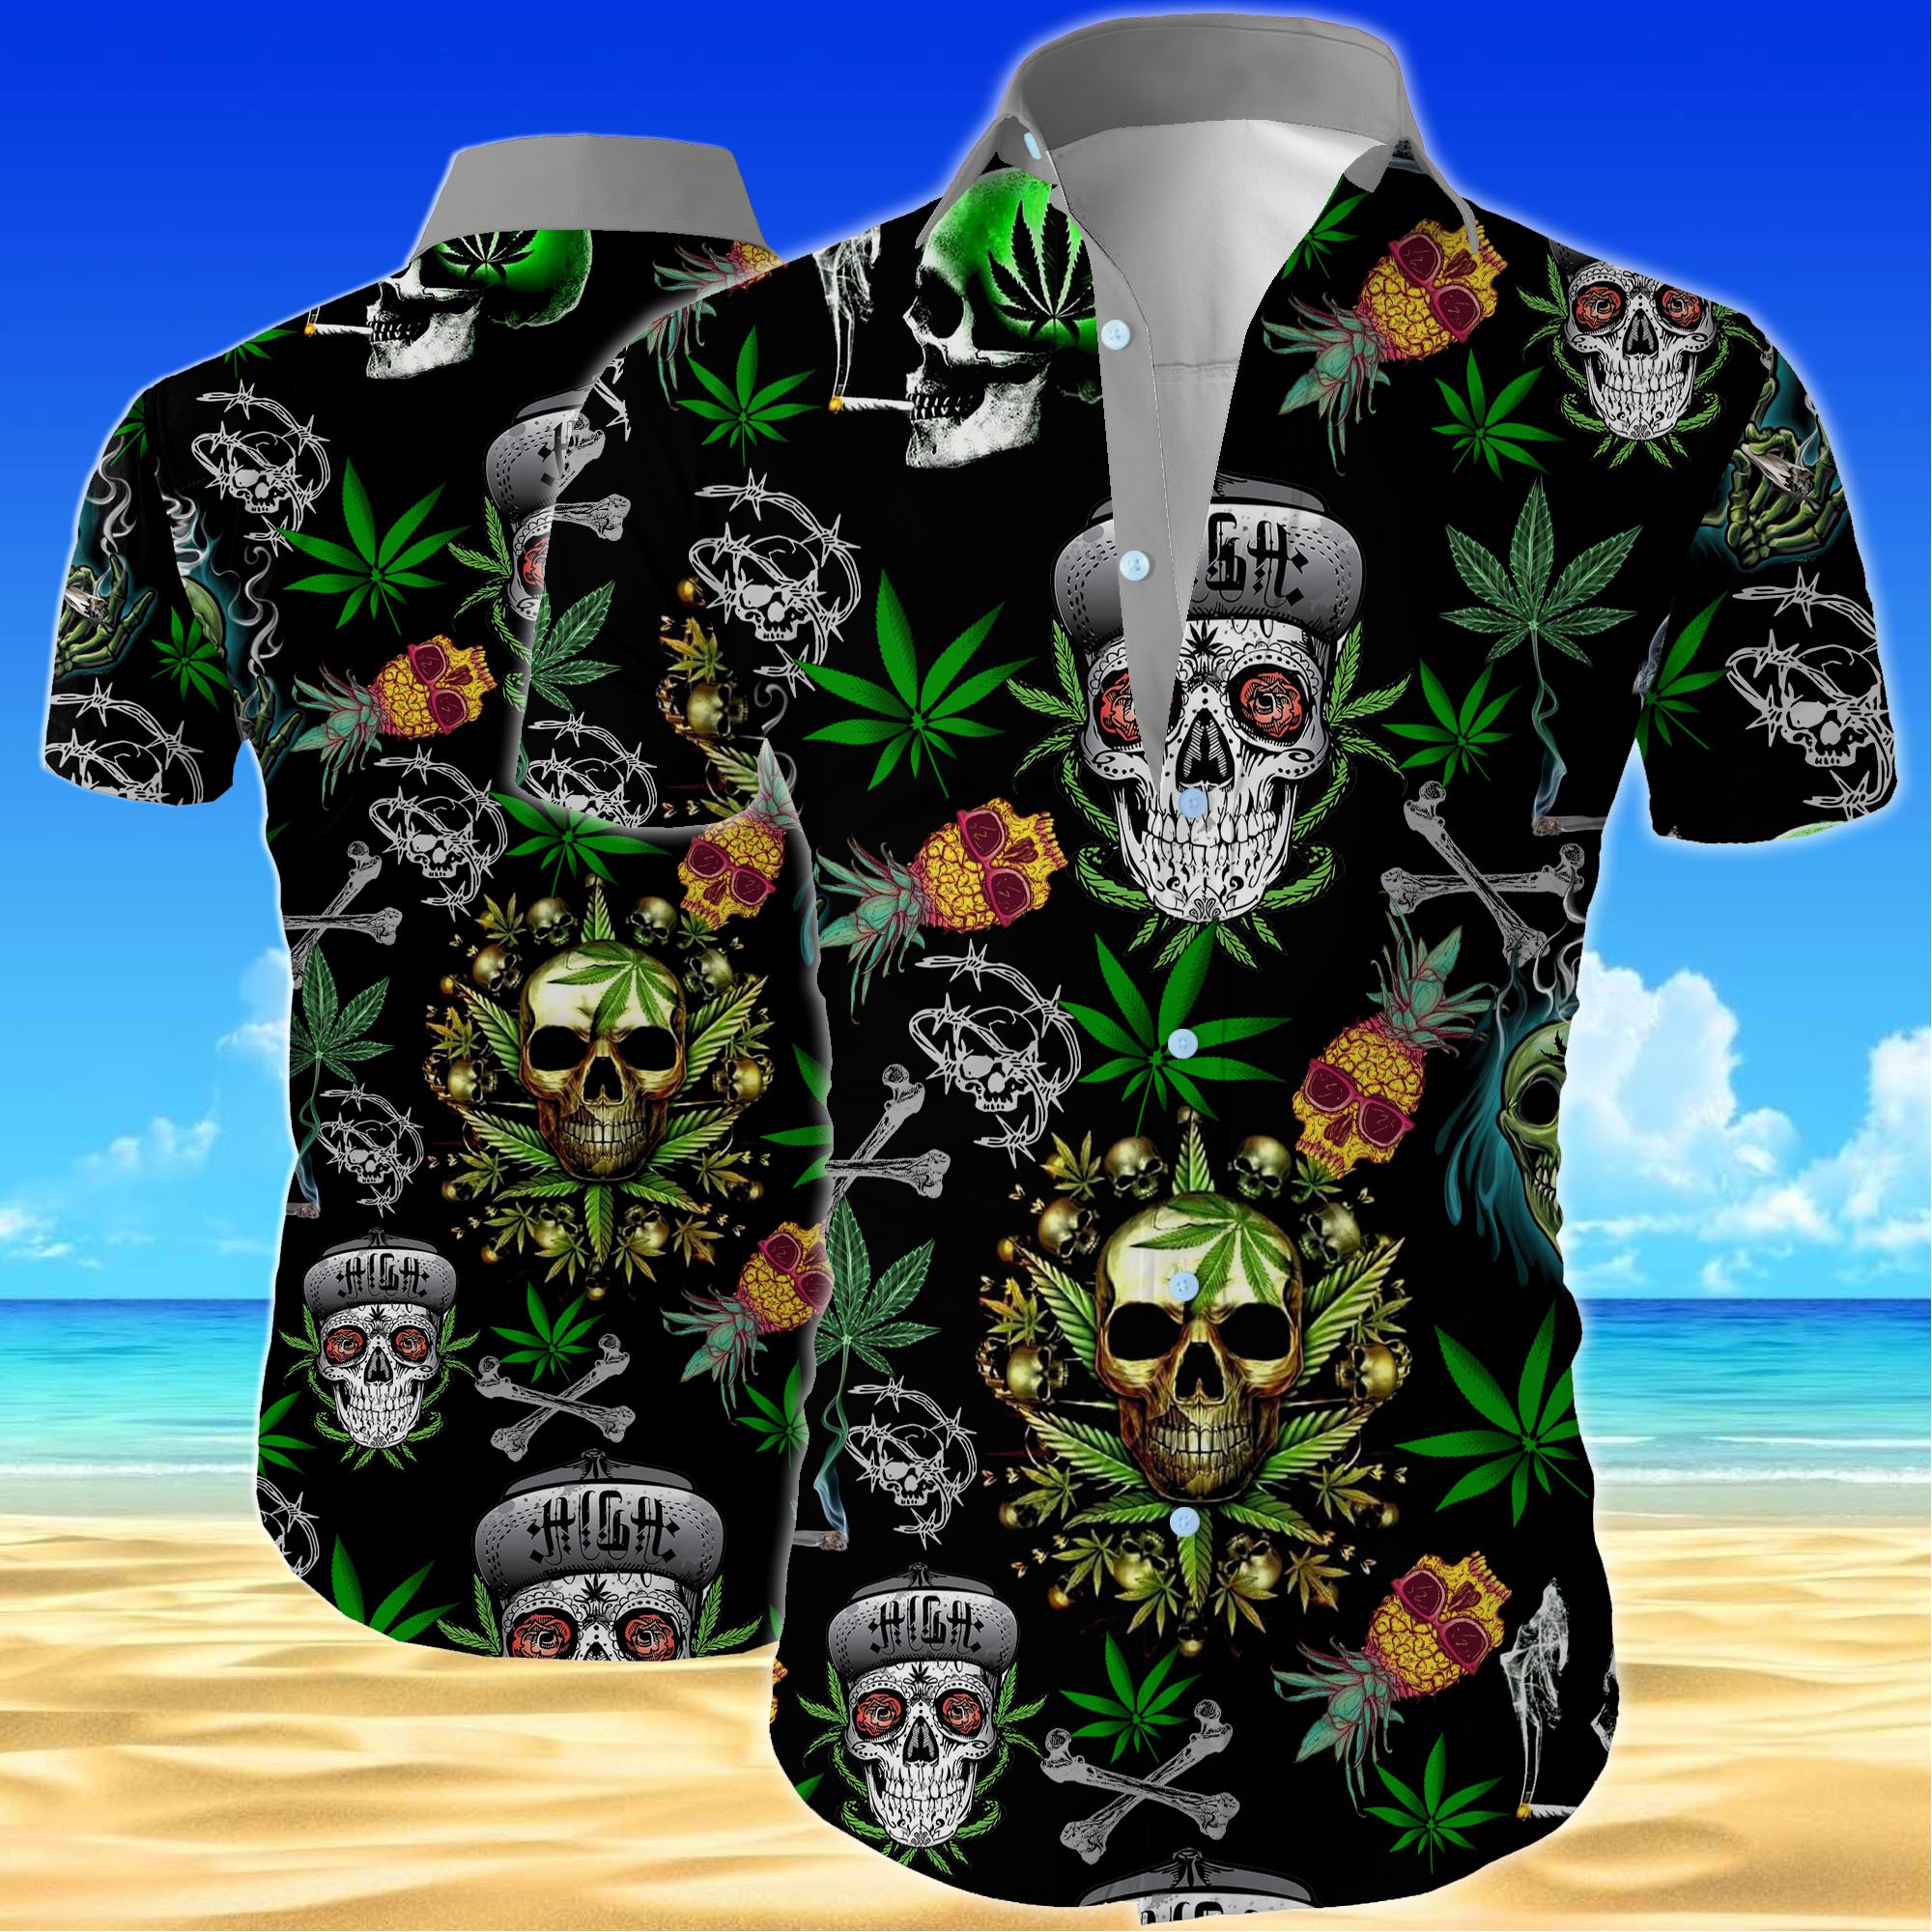 Skull cannabis all over printed hawaiian shirt.